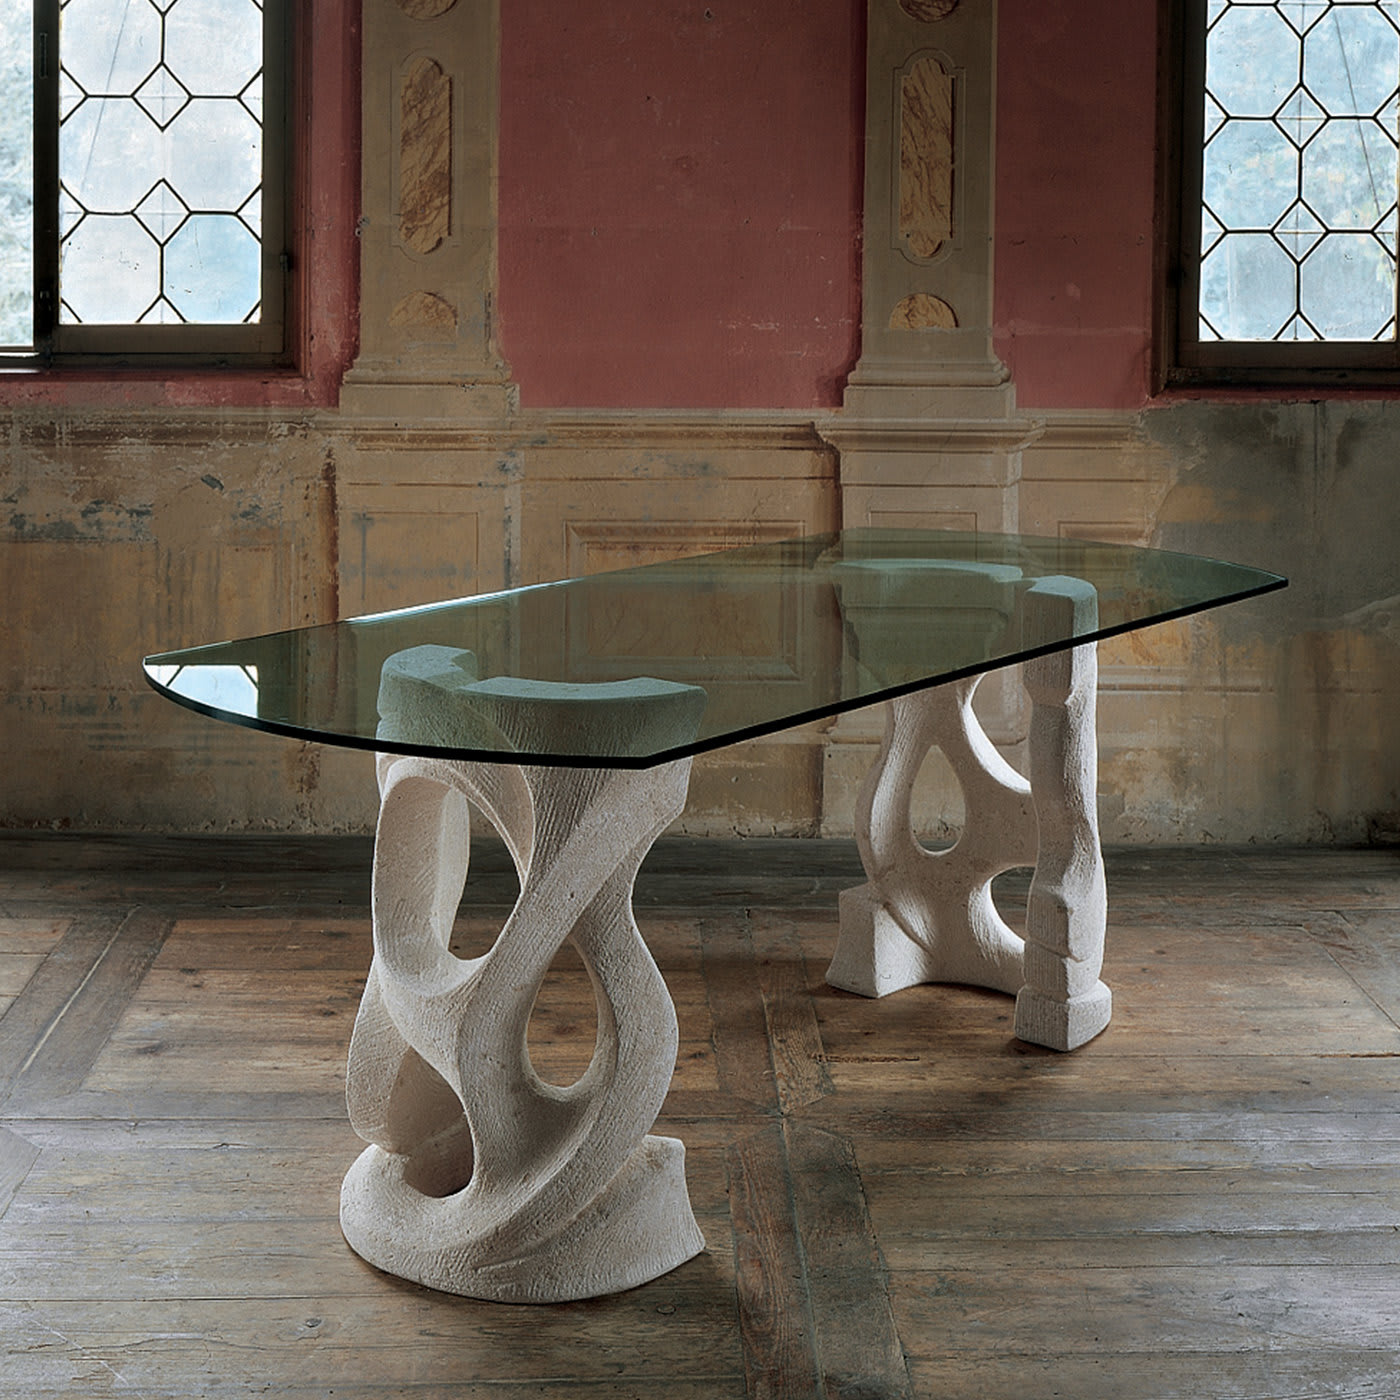 Ca’ d’oro Dining Table by Giandomenico Sandrini - Laboratorio del Marmo